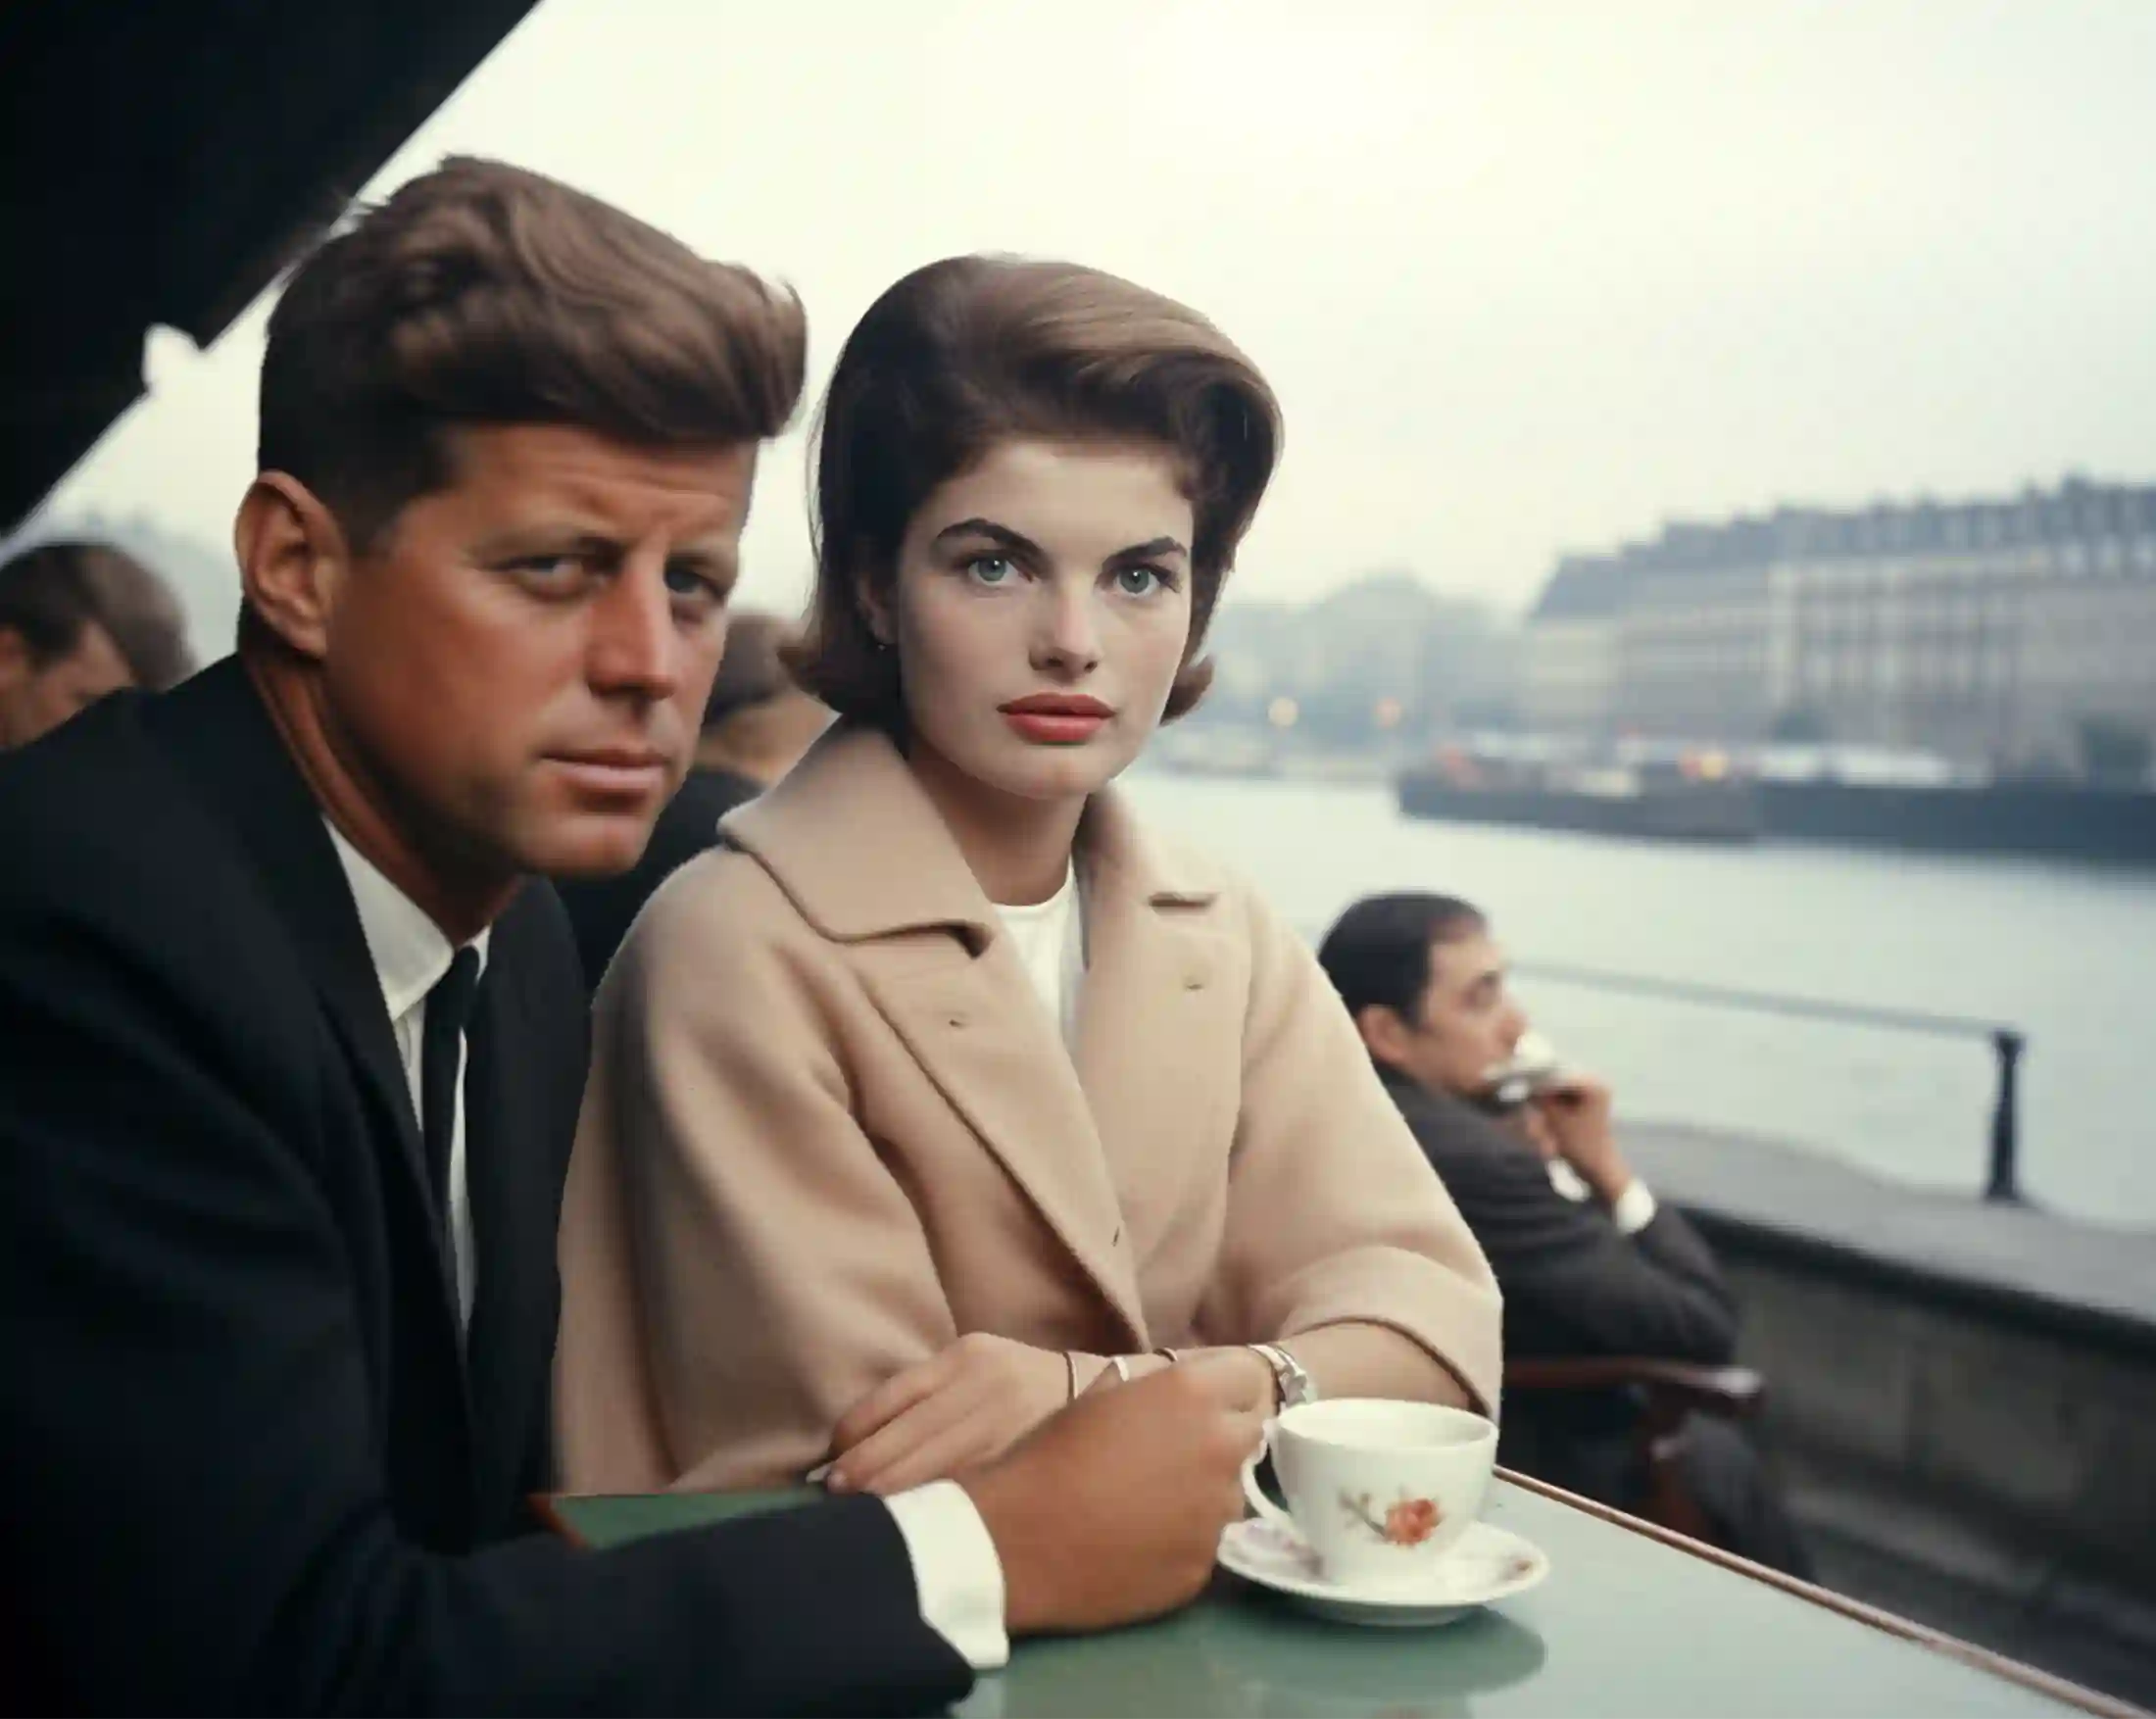 US Präsident in den 50er-Jahren auf Sightseeing mit Frau, beide stehen an einem Stehtisch beim Kaffee trinken